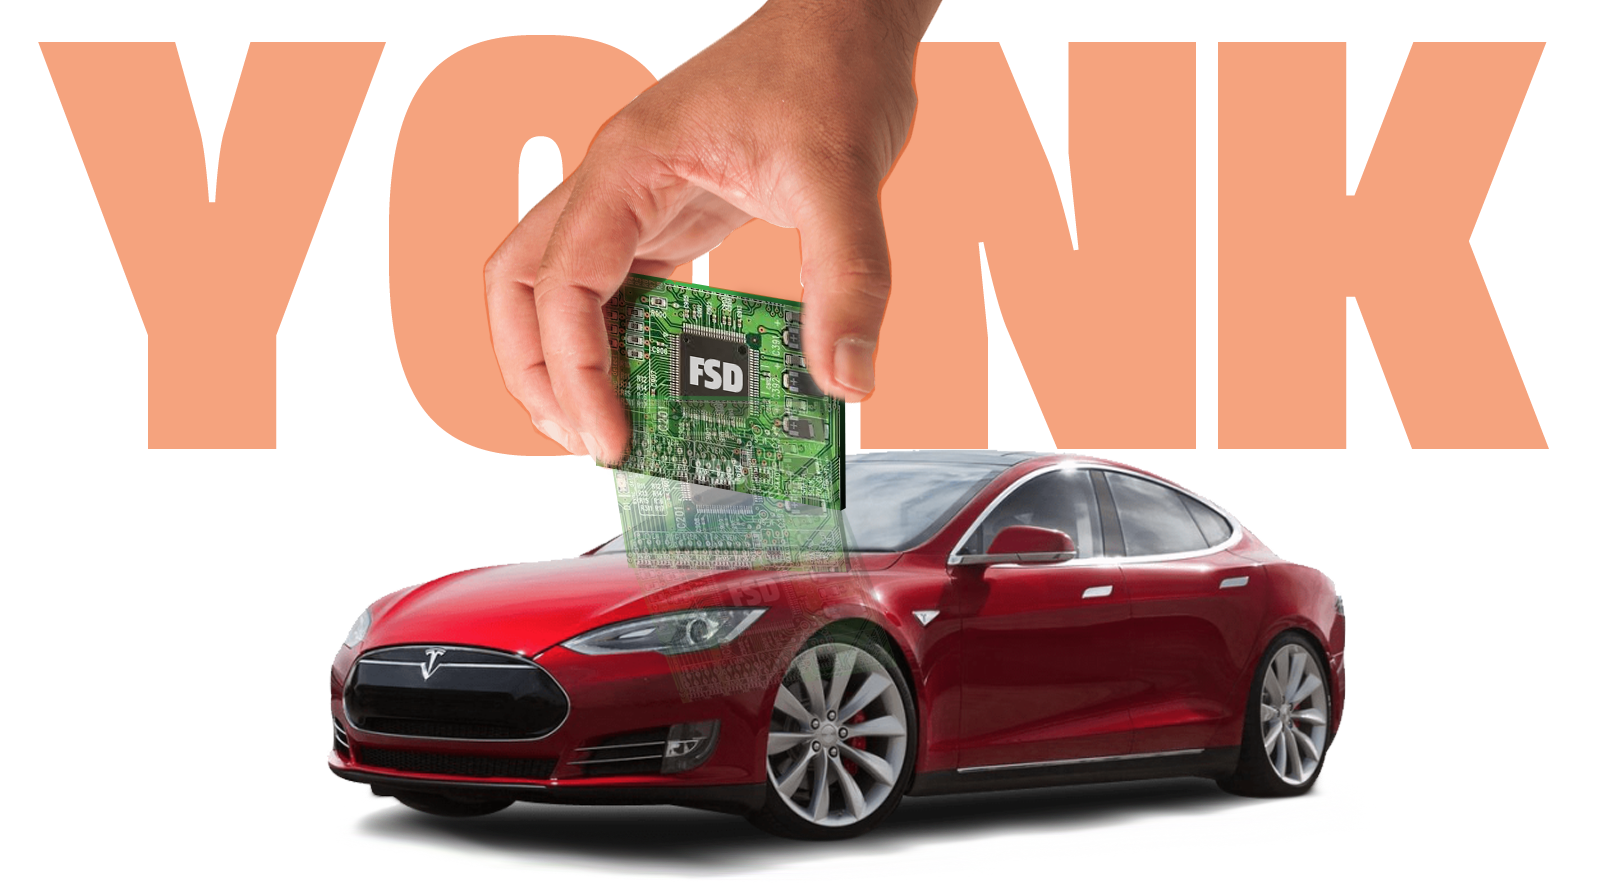 При перепродаже Model S Tesla удалённо отключила автопилот, потому что новый владелец за него не заплатил - 1